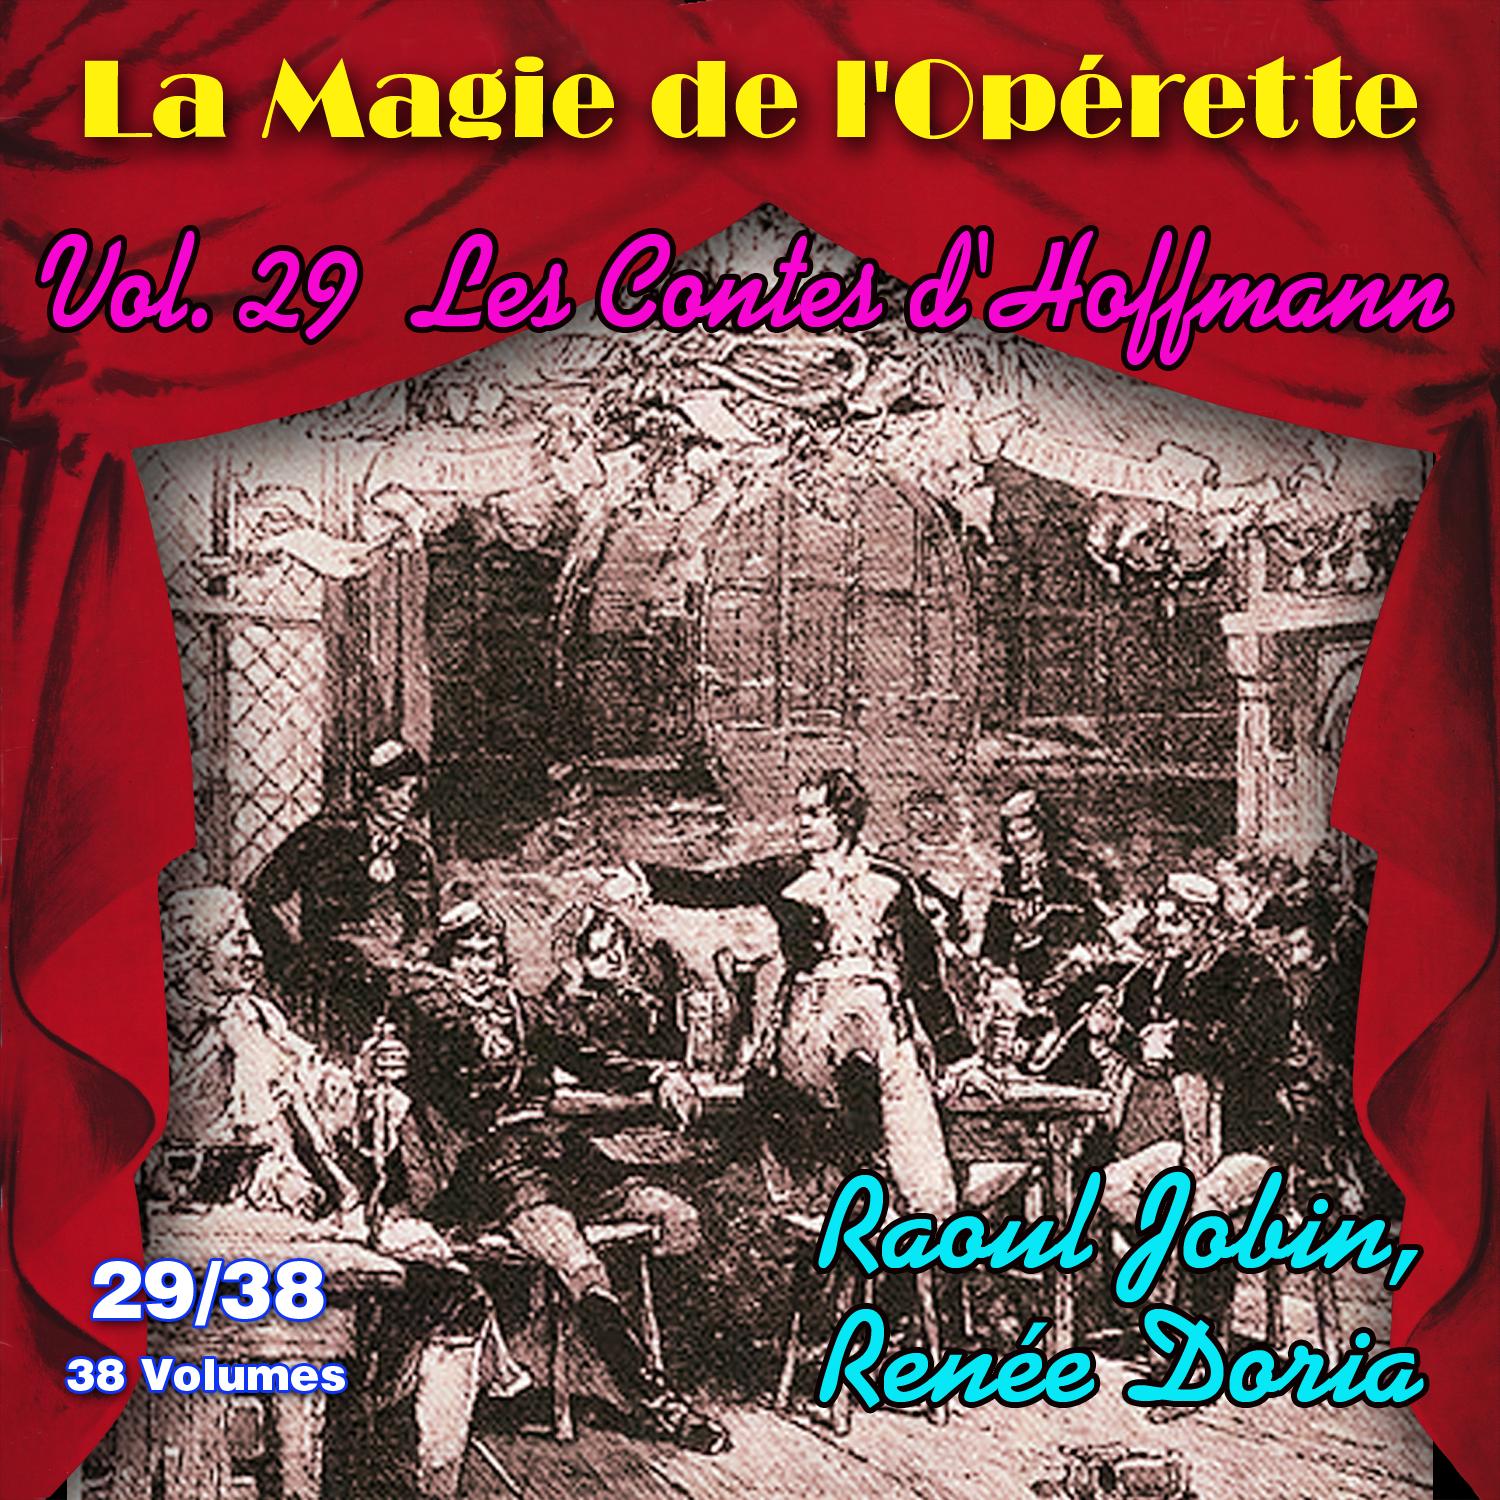 Les contes d' Hoffmann  La Magie de l' Ope rette en 38 volumes  Vol. 29 38